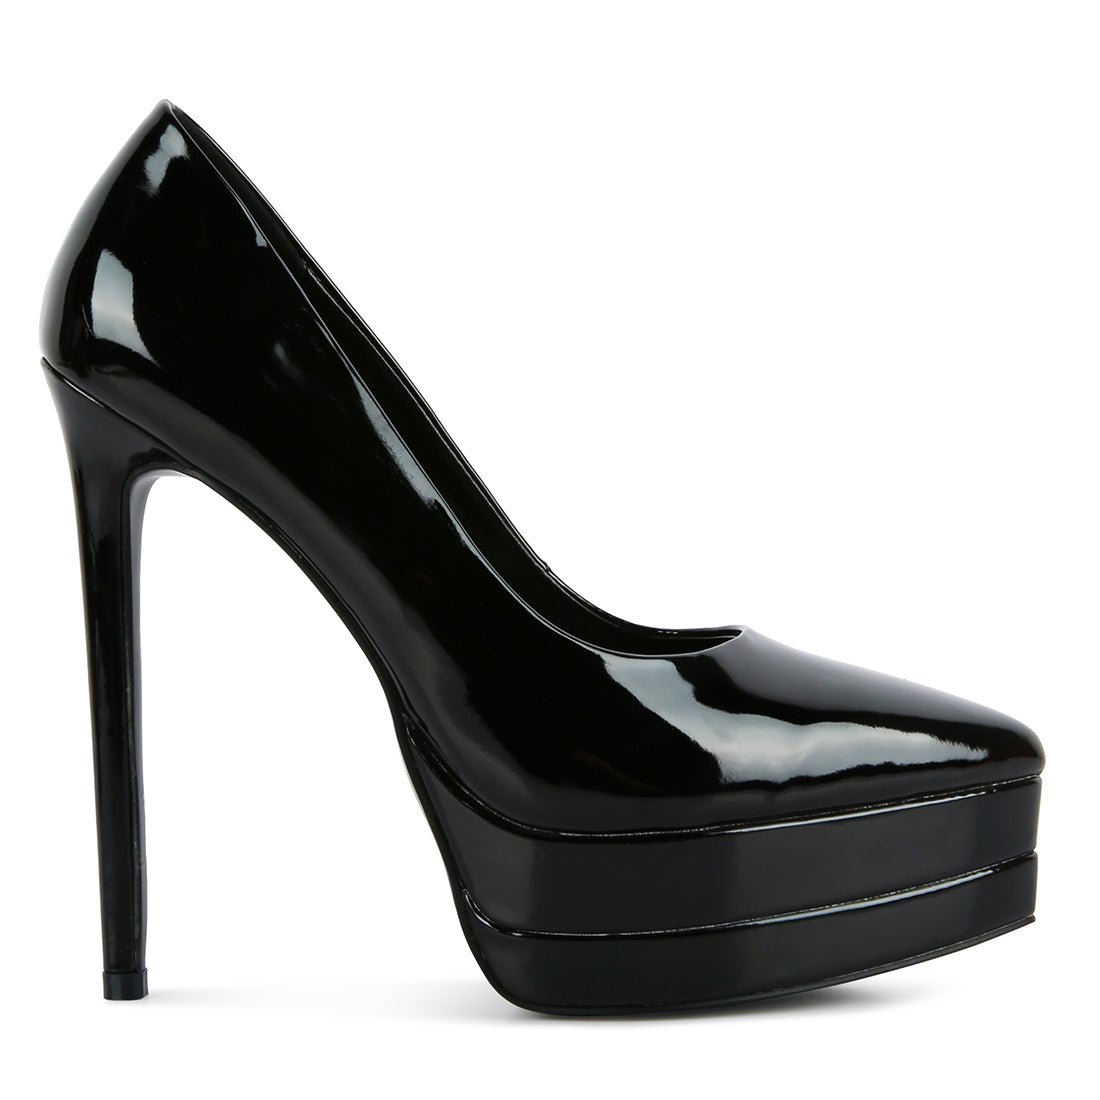 high heeled sandals#color_black